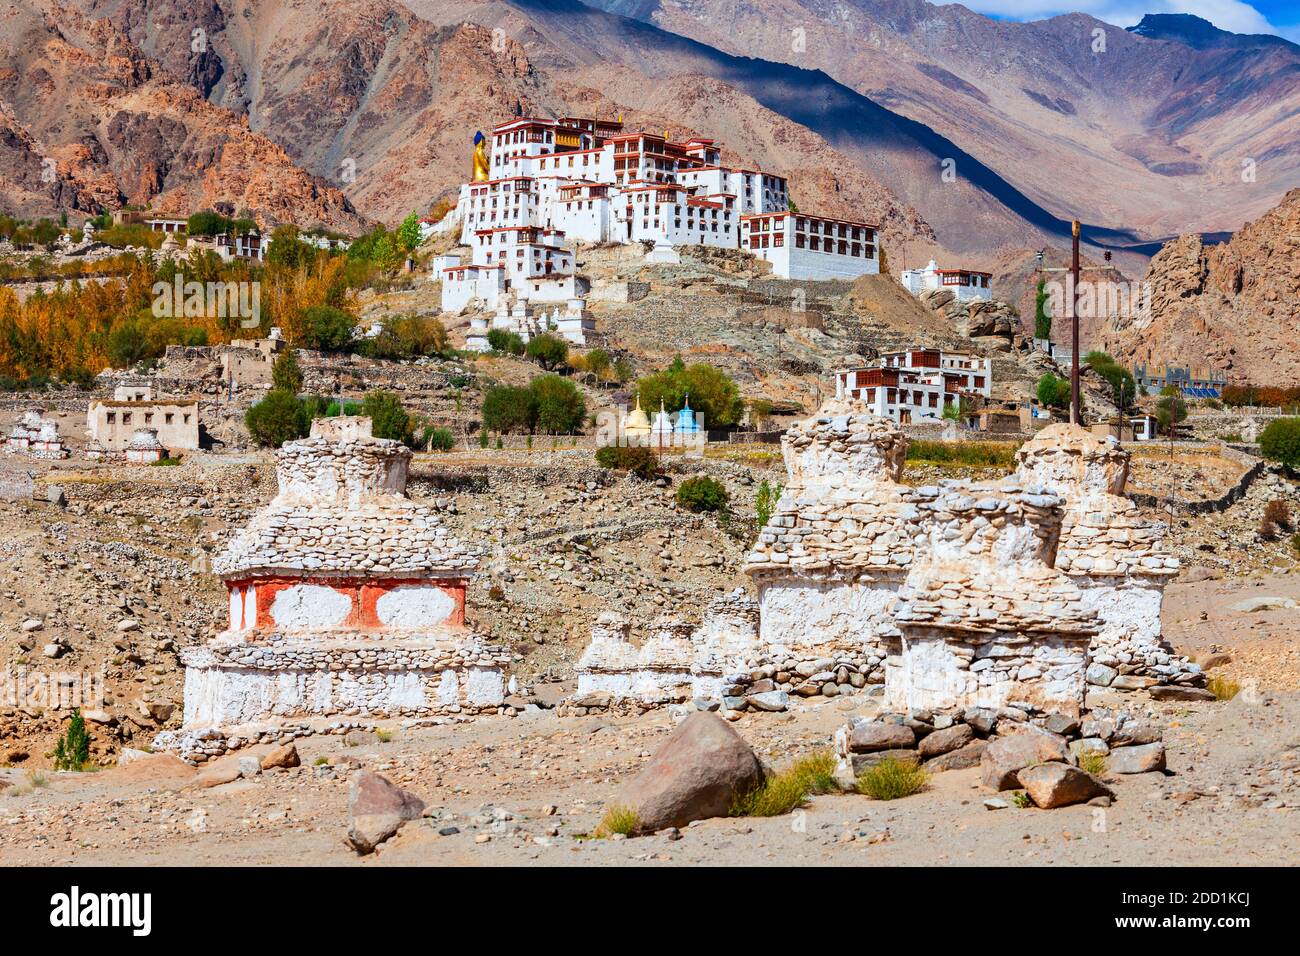 Stupas blancs près du monastère du Likir ou Gompa dans le village du Likir près de Leh, dans le Ladakh, au nord de l'Inde Banque D'Images